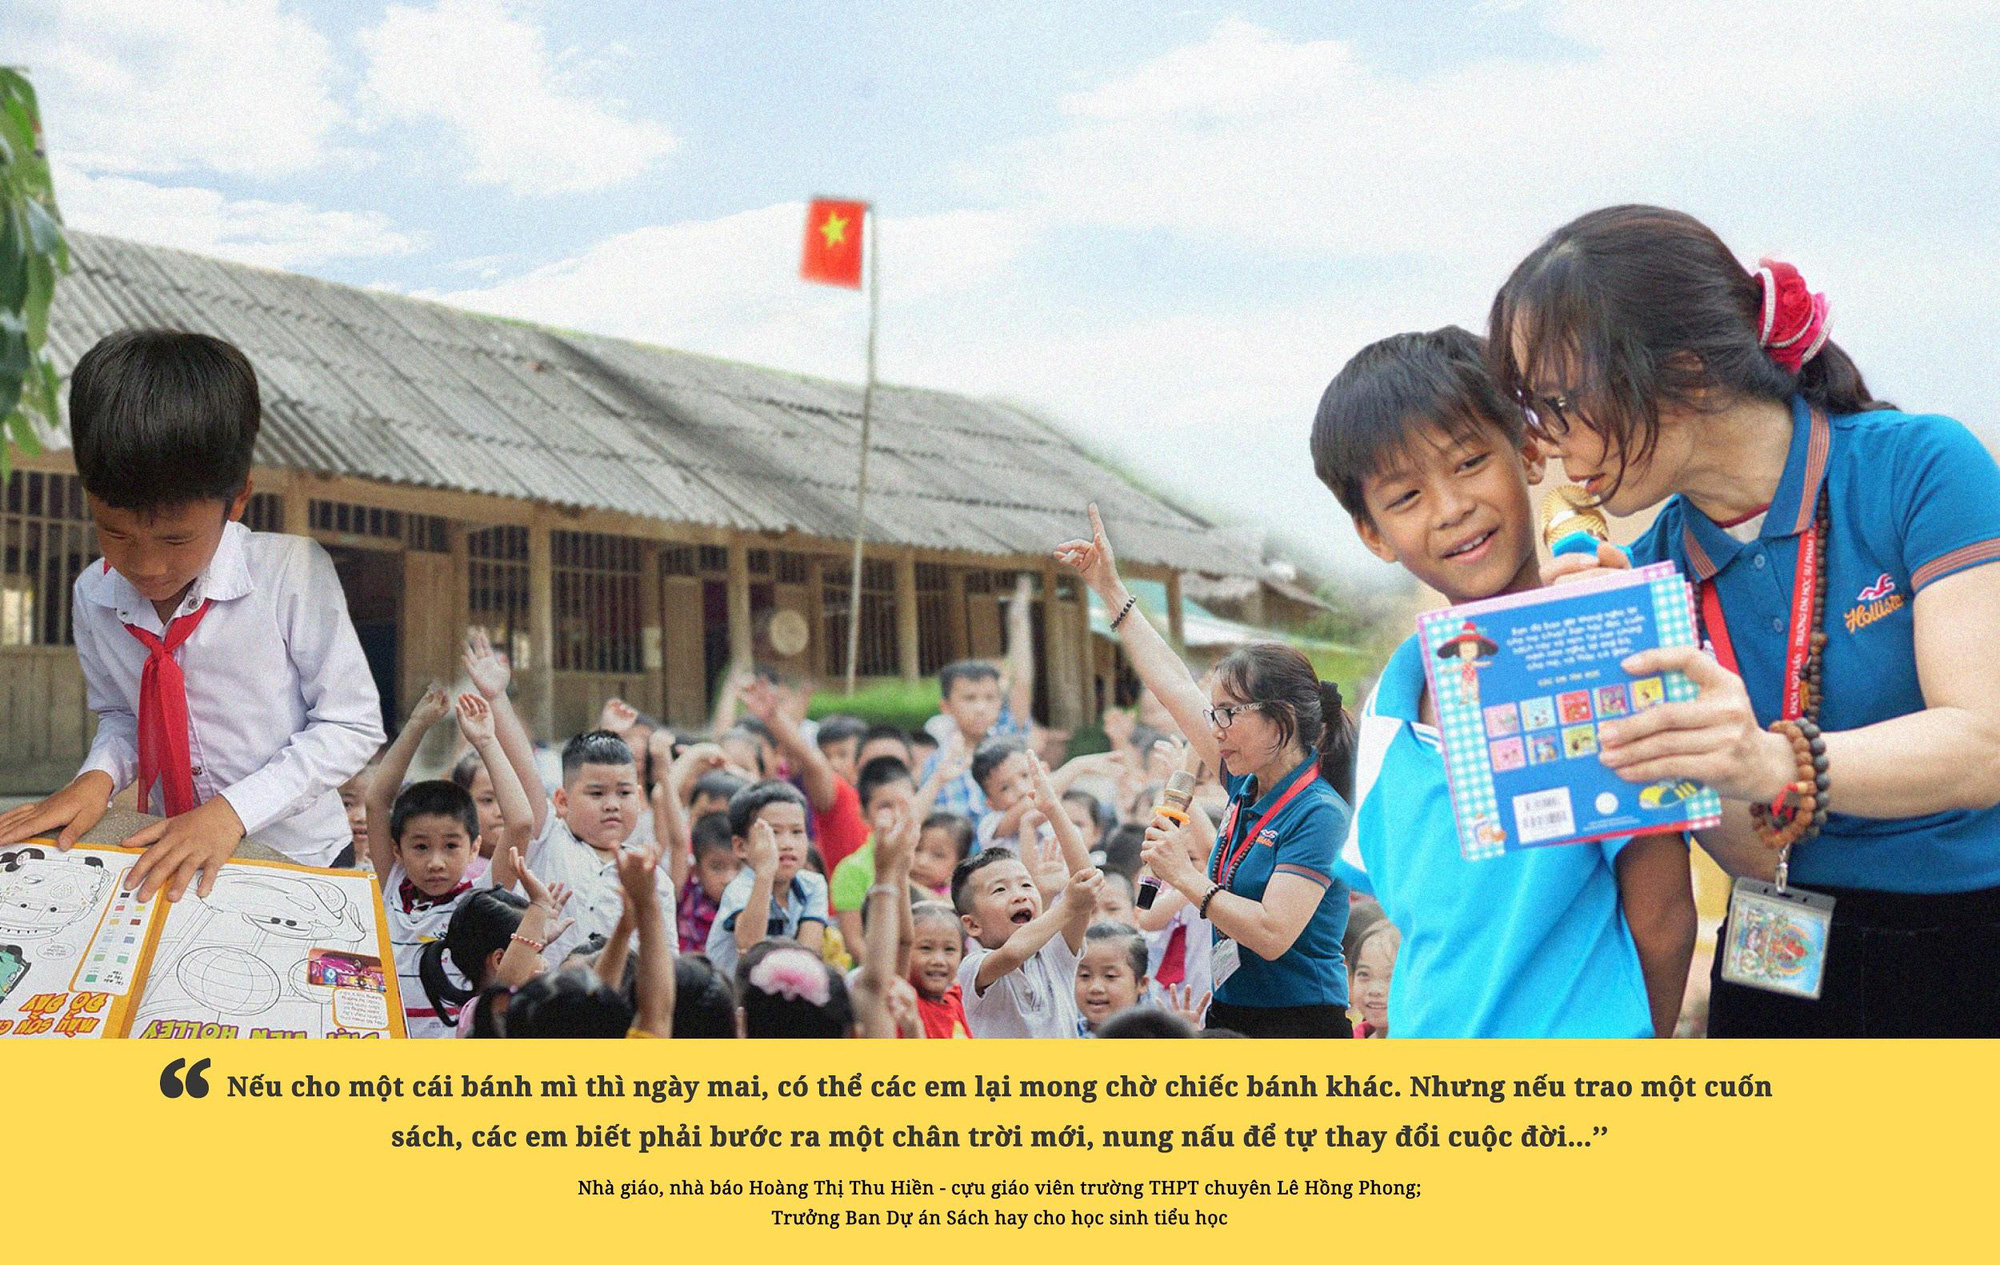 ELSA Speak phát động chiến dịch Vì một Việt Nam tốt đẹp hơn, quyết tâm mang nhiều đầu sách bổ ích đến những ngôi trường còn khó khăn trên cả nước - Ảnh 2.